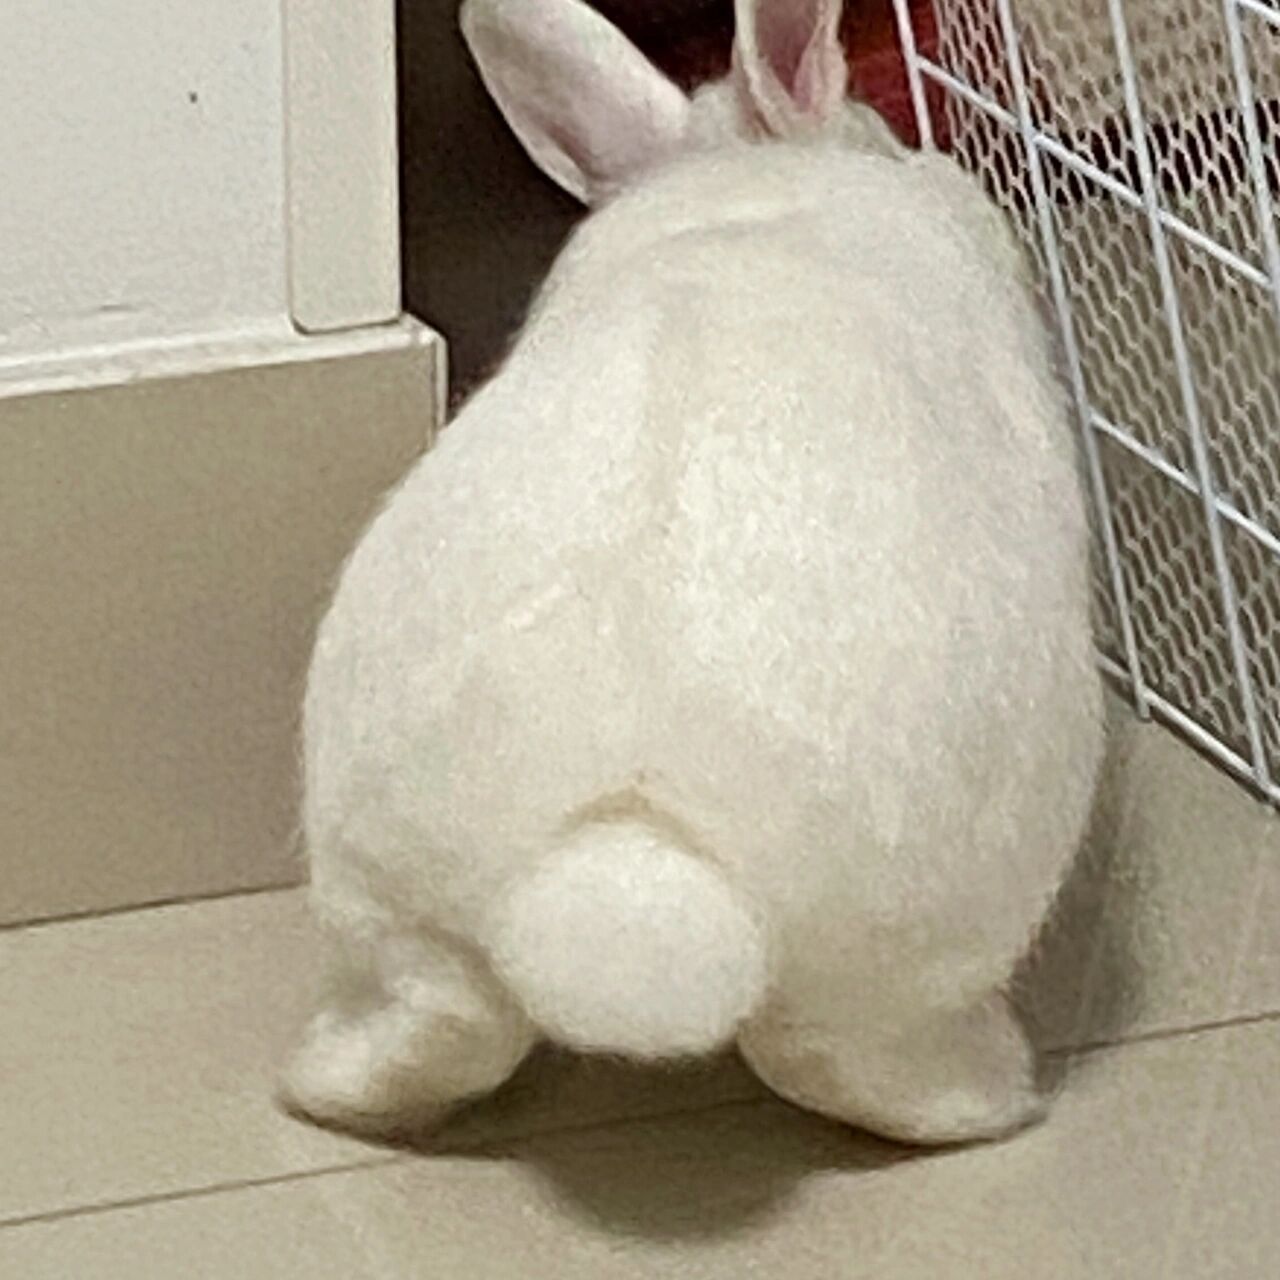 兔子的尾巴照片图片